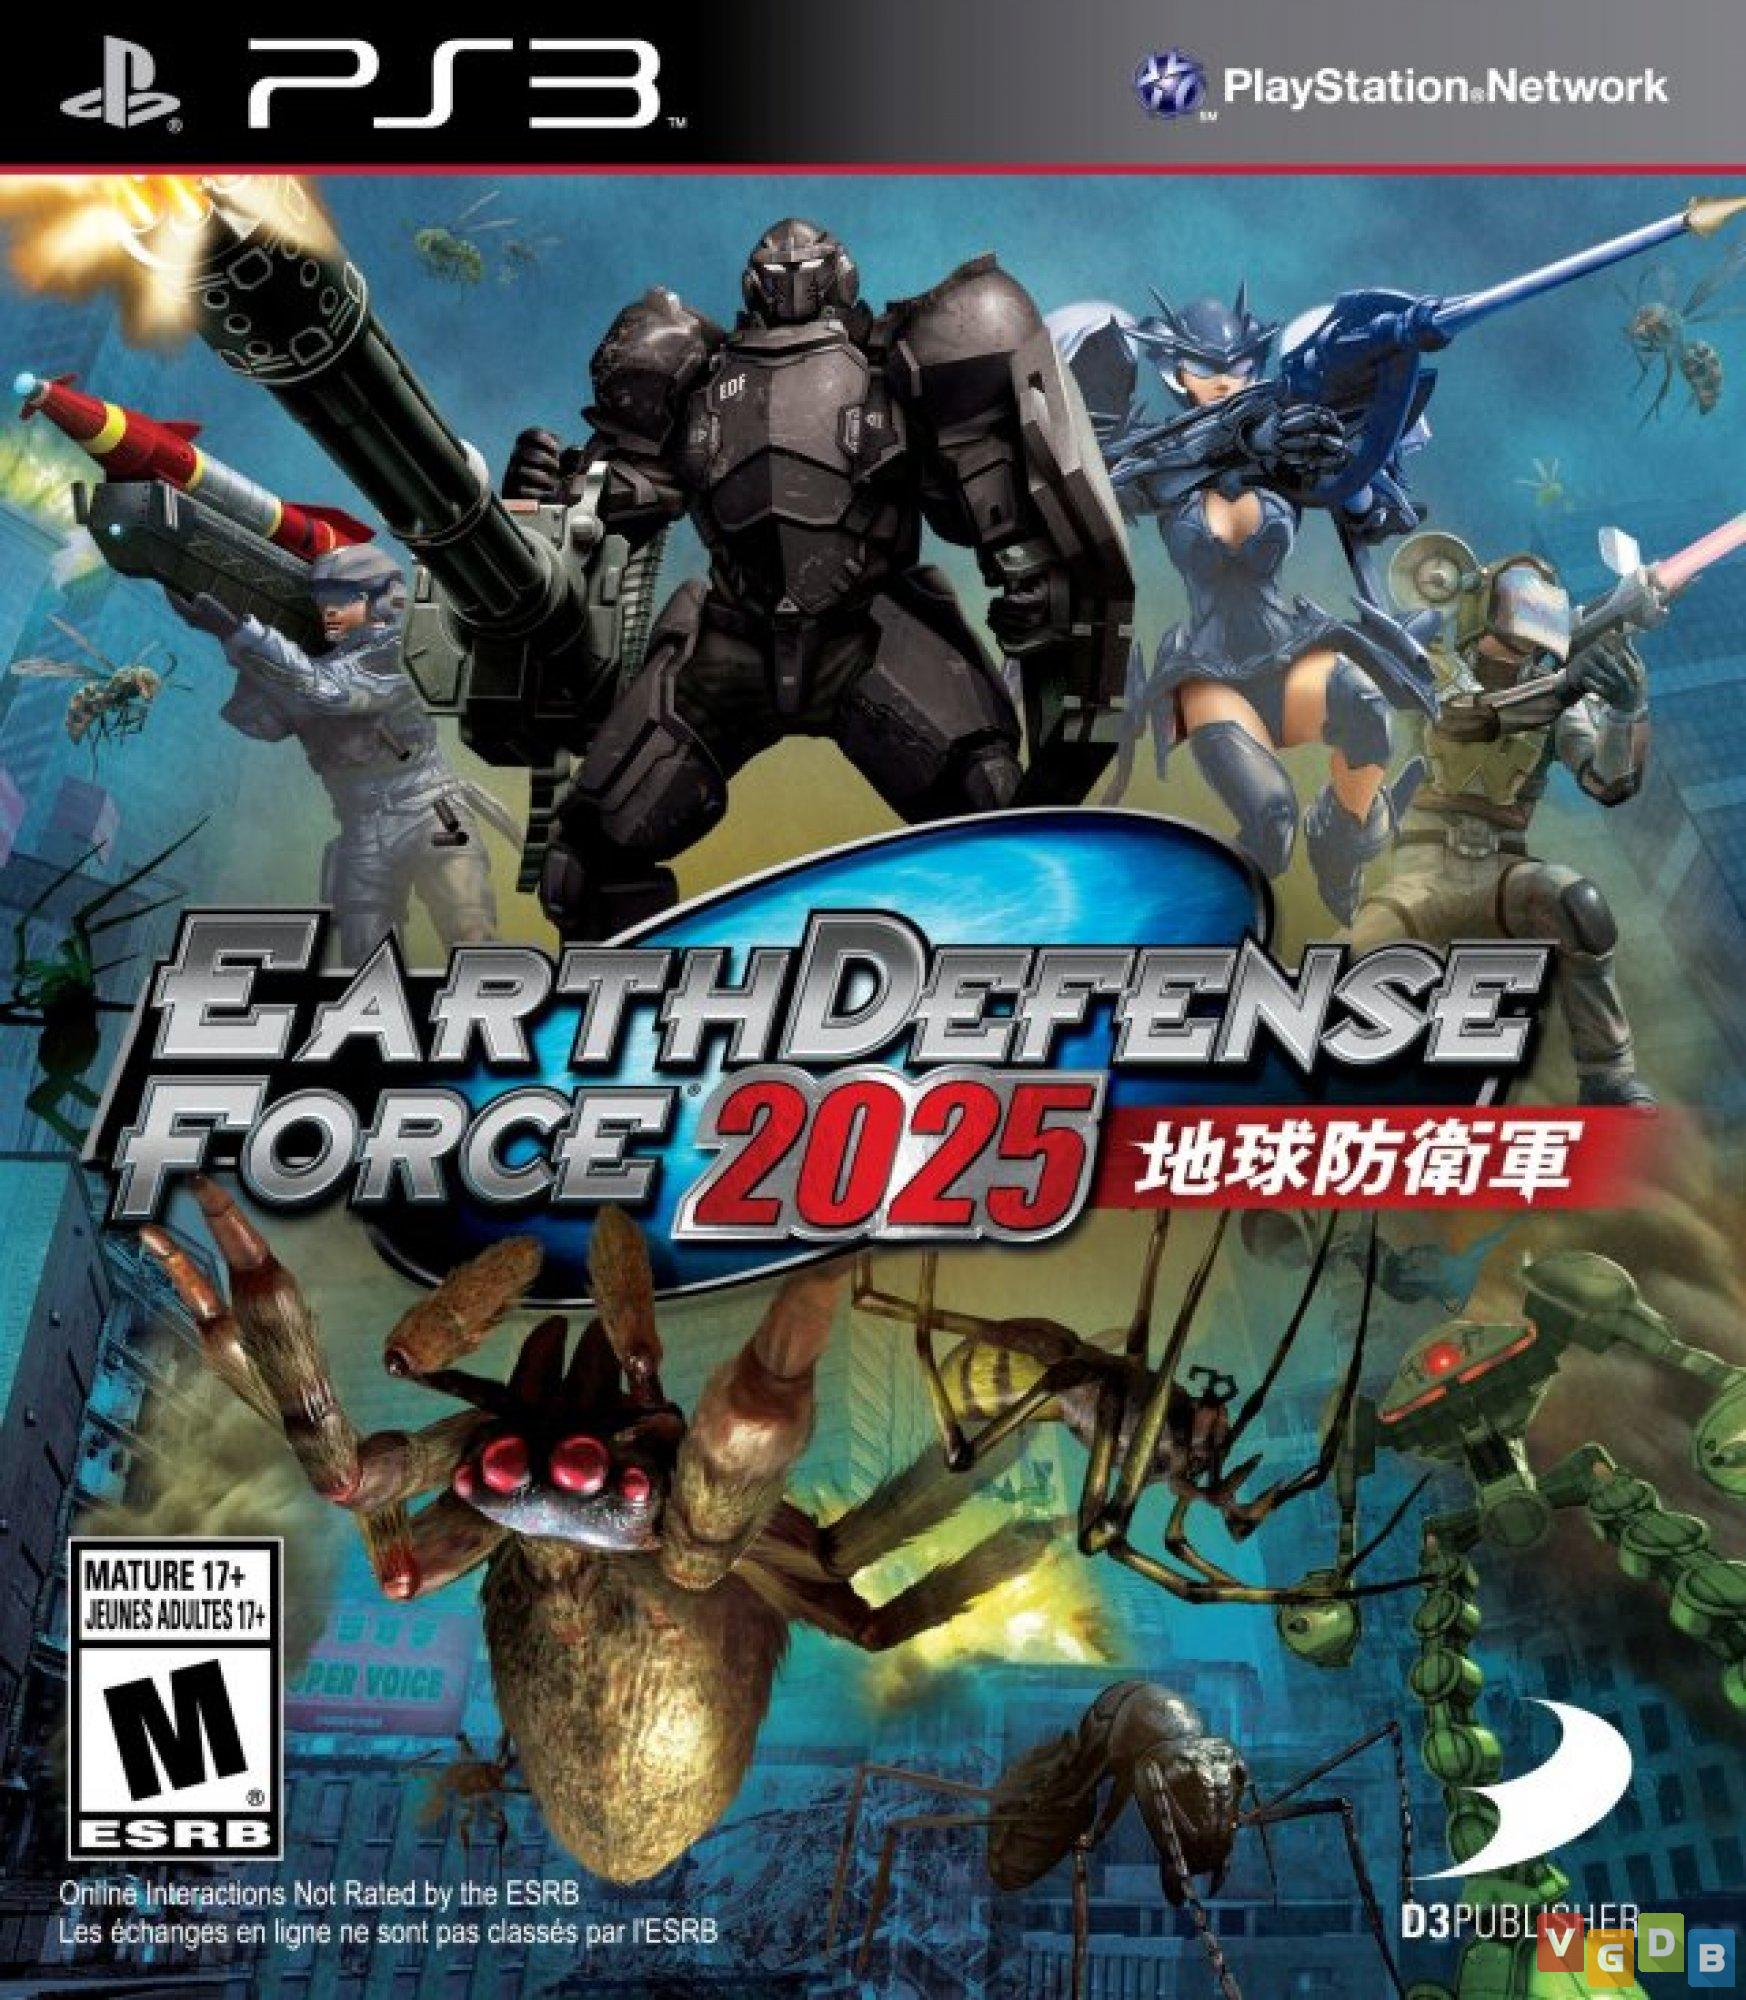 Jogos lançados pela D3 Publisher